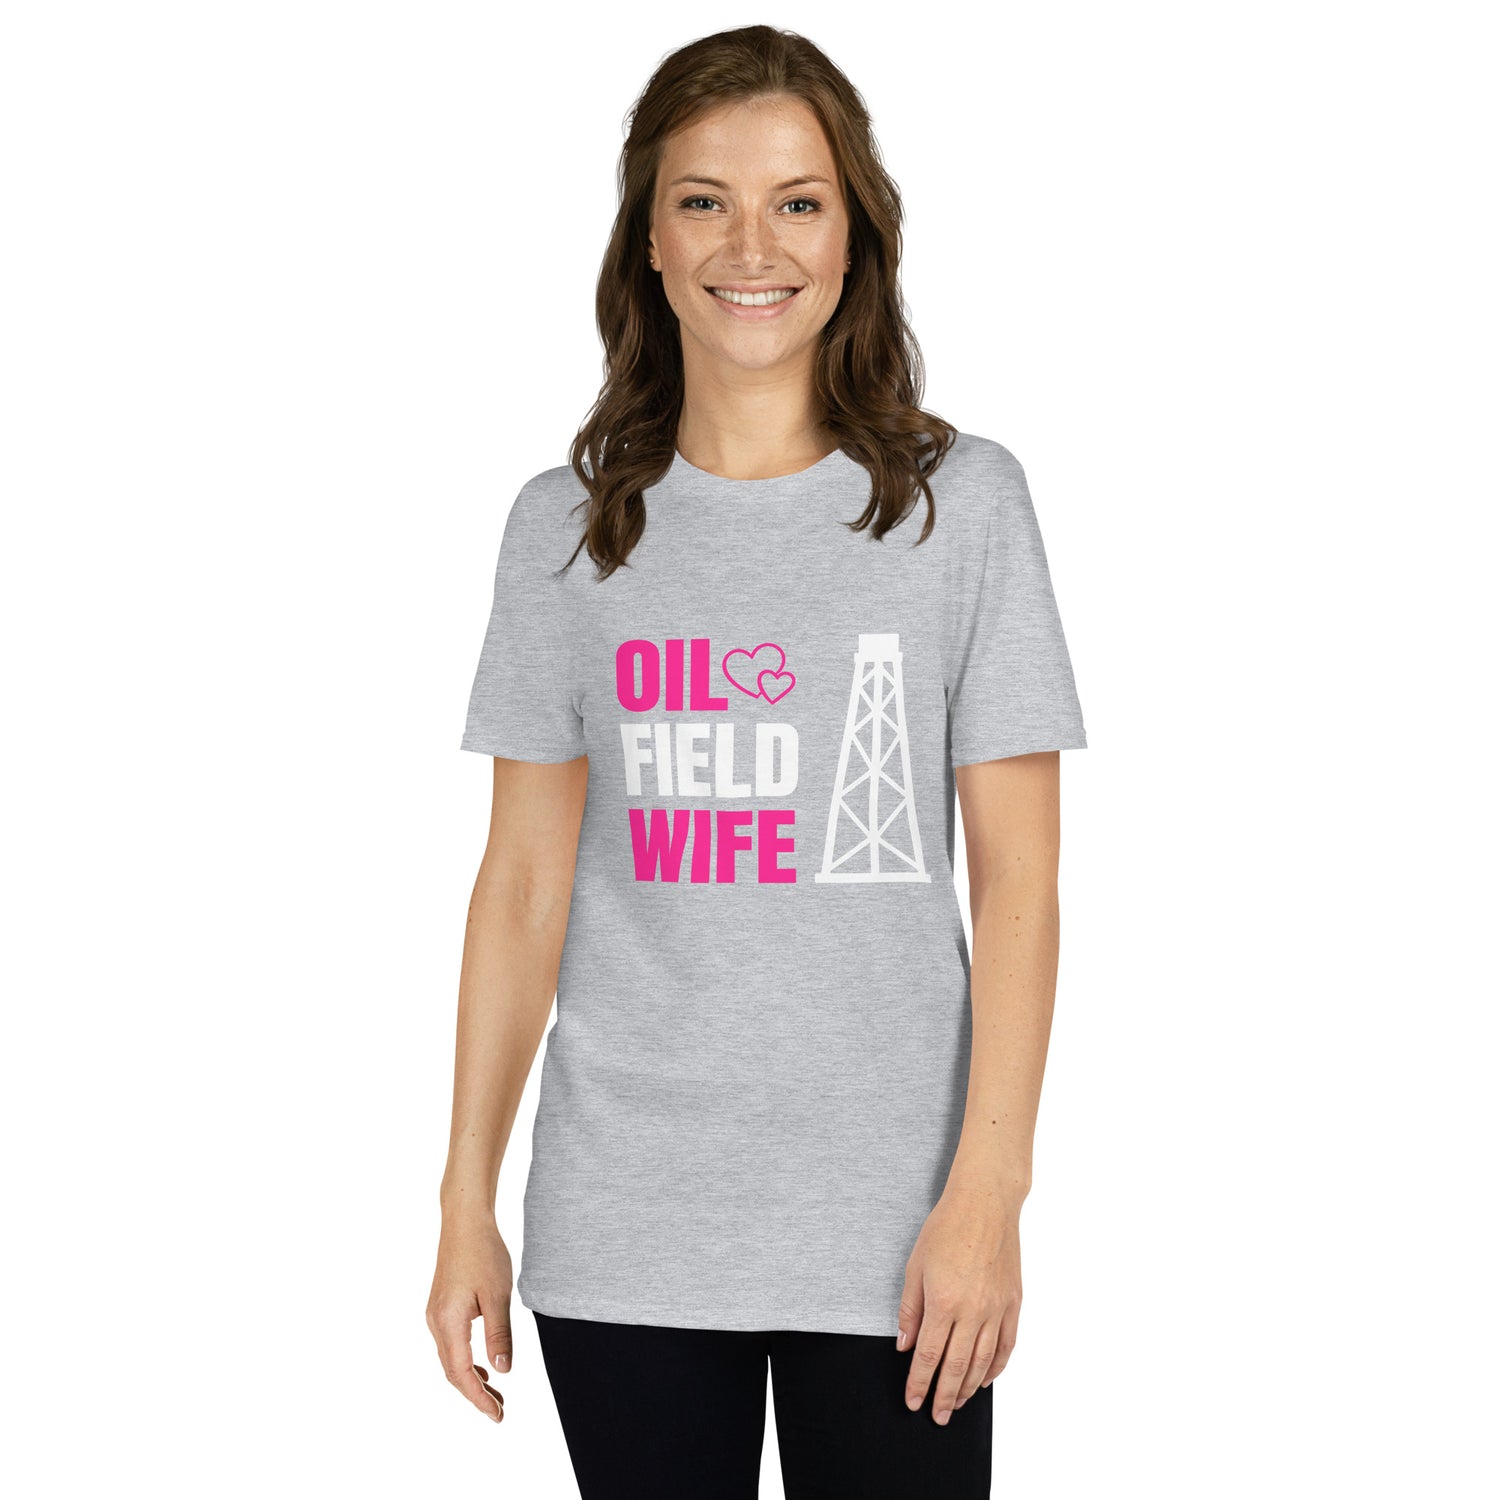 Oil Field Wife - Women's T-Shirt